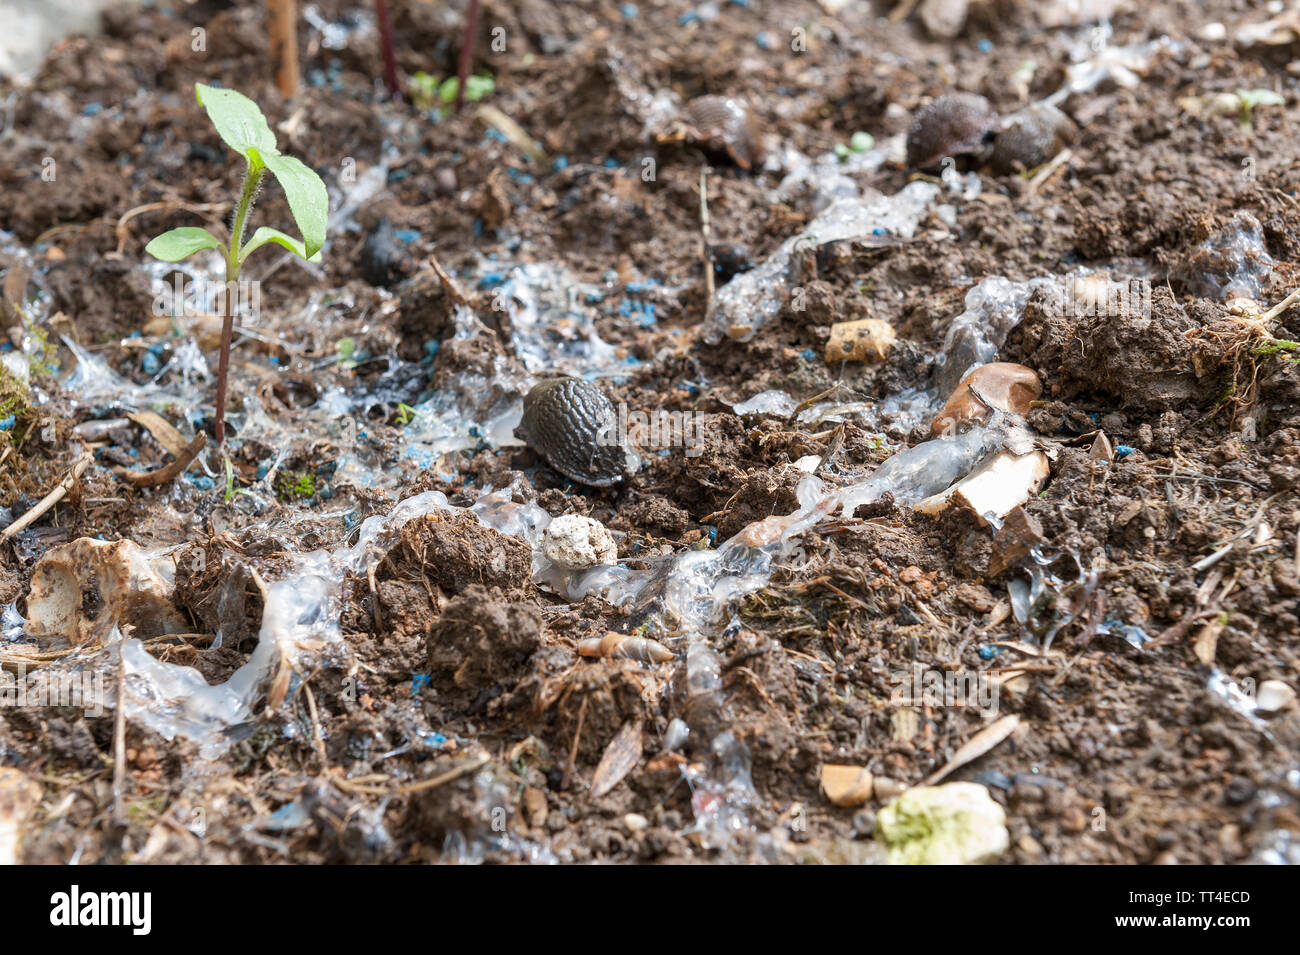 Metaldehyd schneckenkorn von DEFRA ab Frühjahr 2020 unannehmbares Risiko verboten zu Vögeln und Säugetieren, baut sich Wasser Tisch große landwirtschaftliche Nutzung Stockfoto